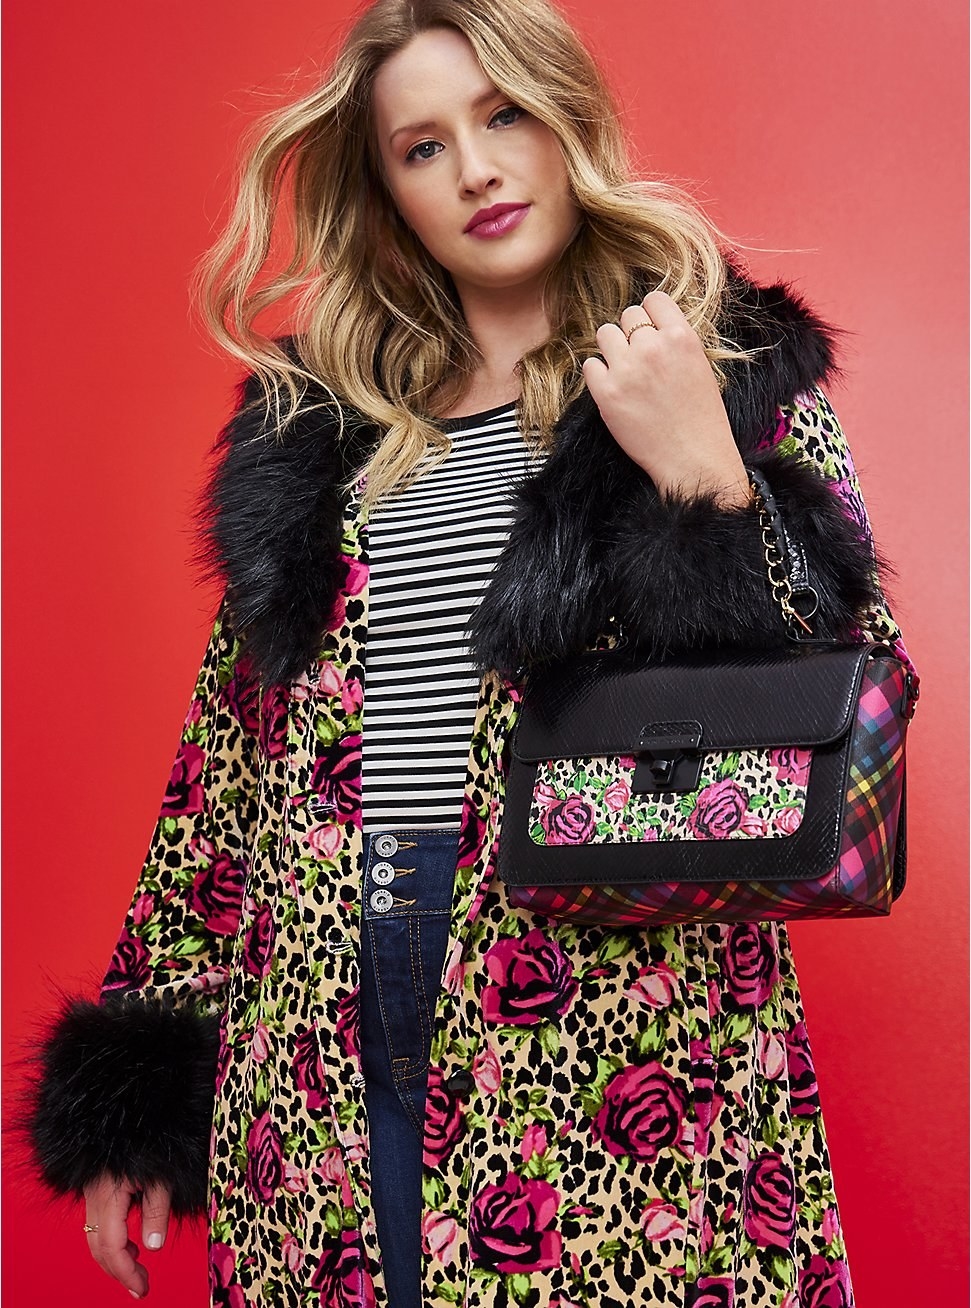 model wearing floral coat and holding floral satchel bag